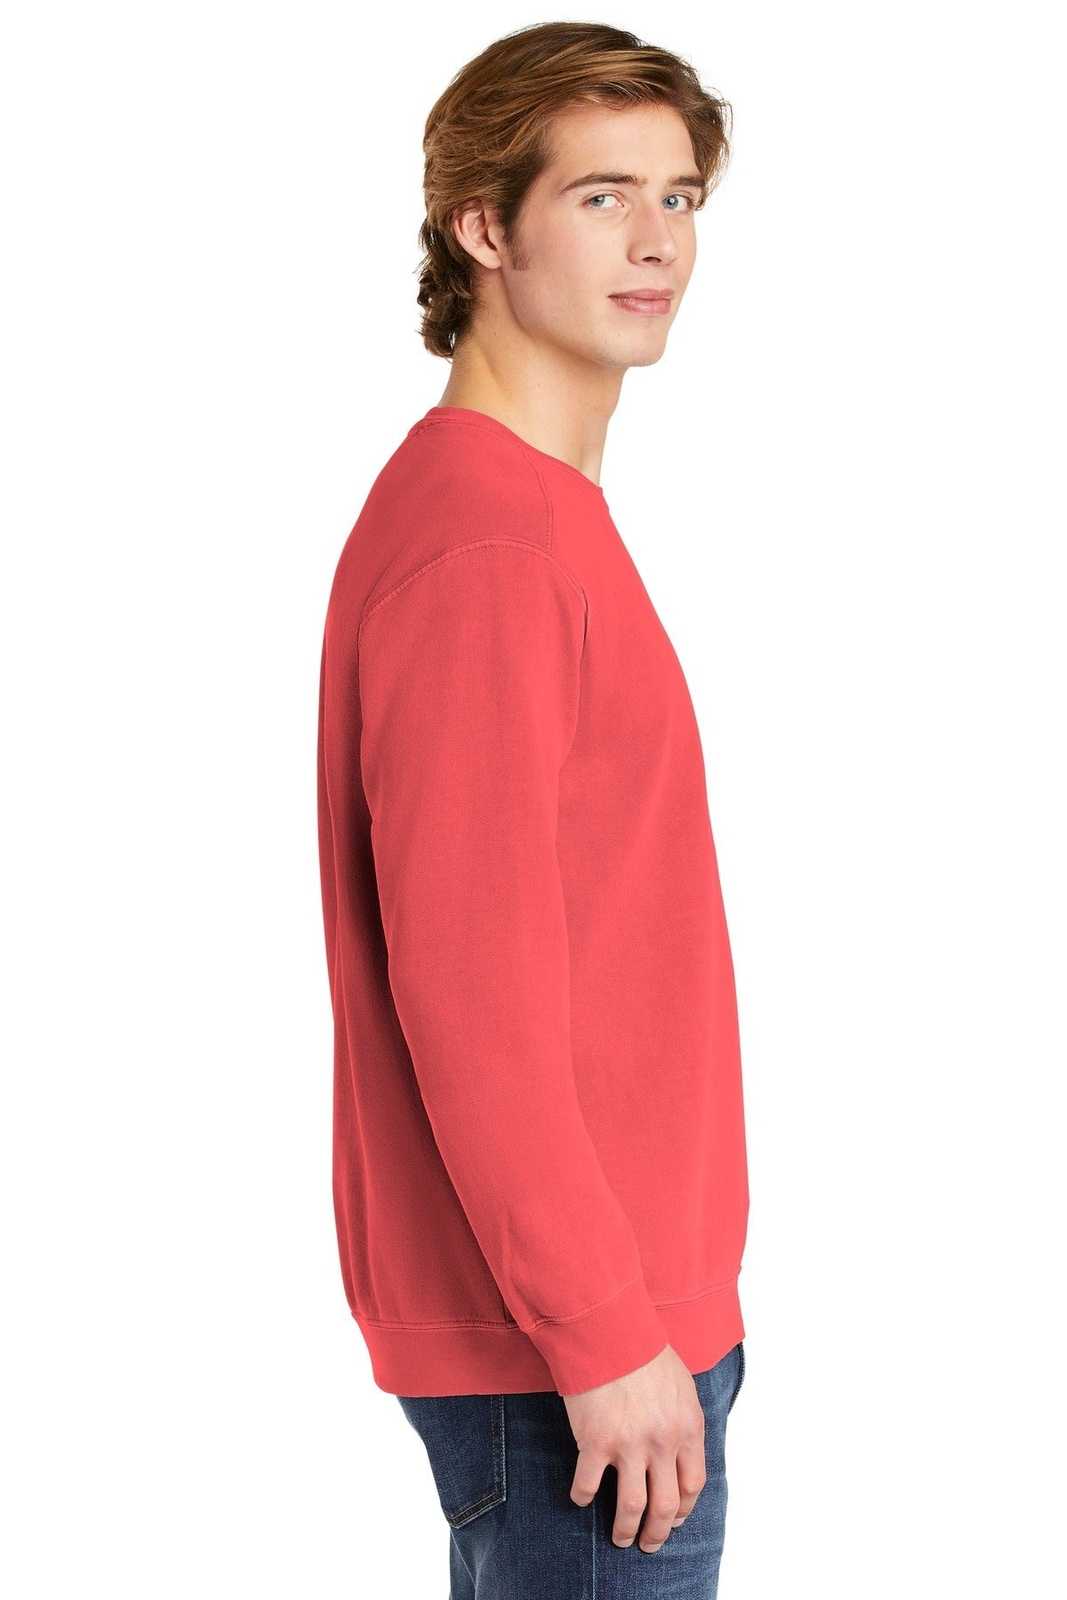 Comfort Colors 1566 Ring Spun Crewneck Sweatshirt - Watermelon - HIT a Double